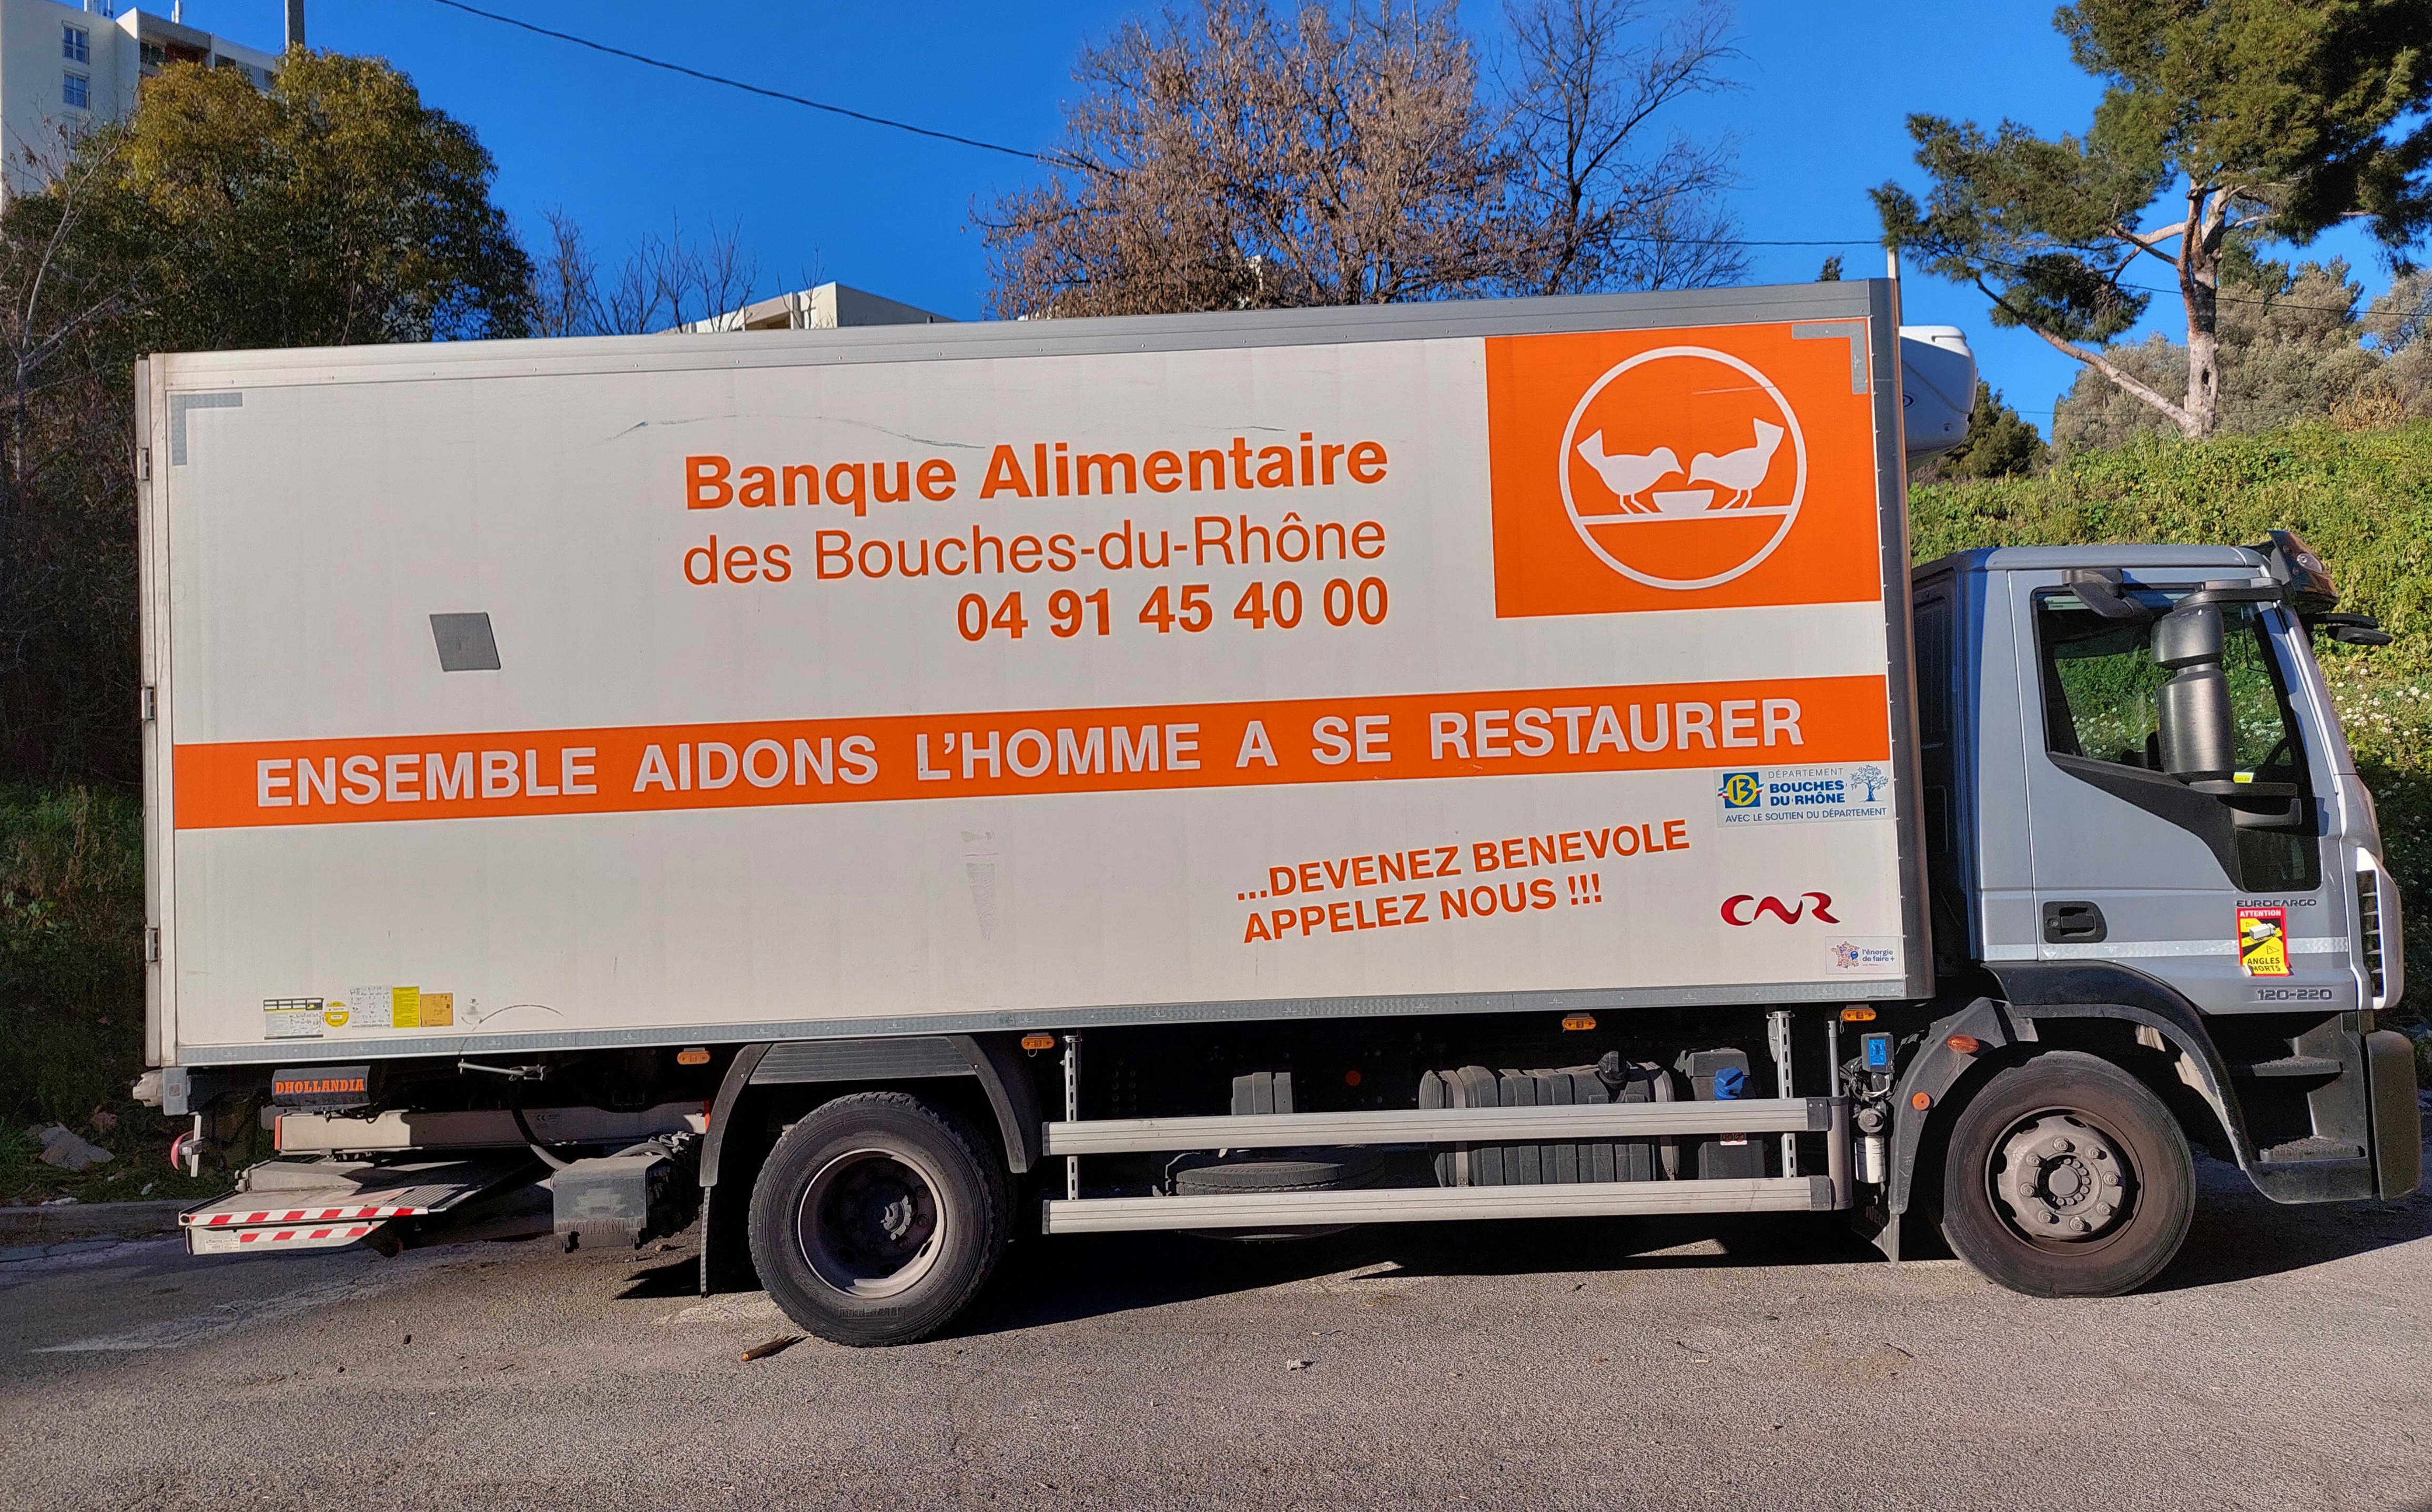 Camion Banque Alimentaire des Bouches-du-Rhône